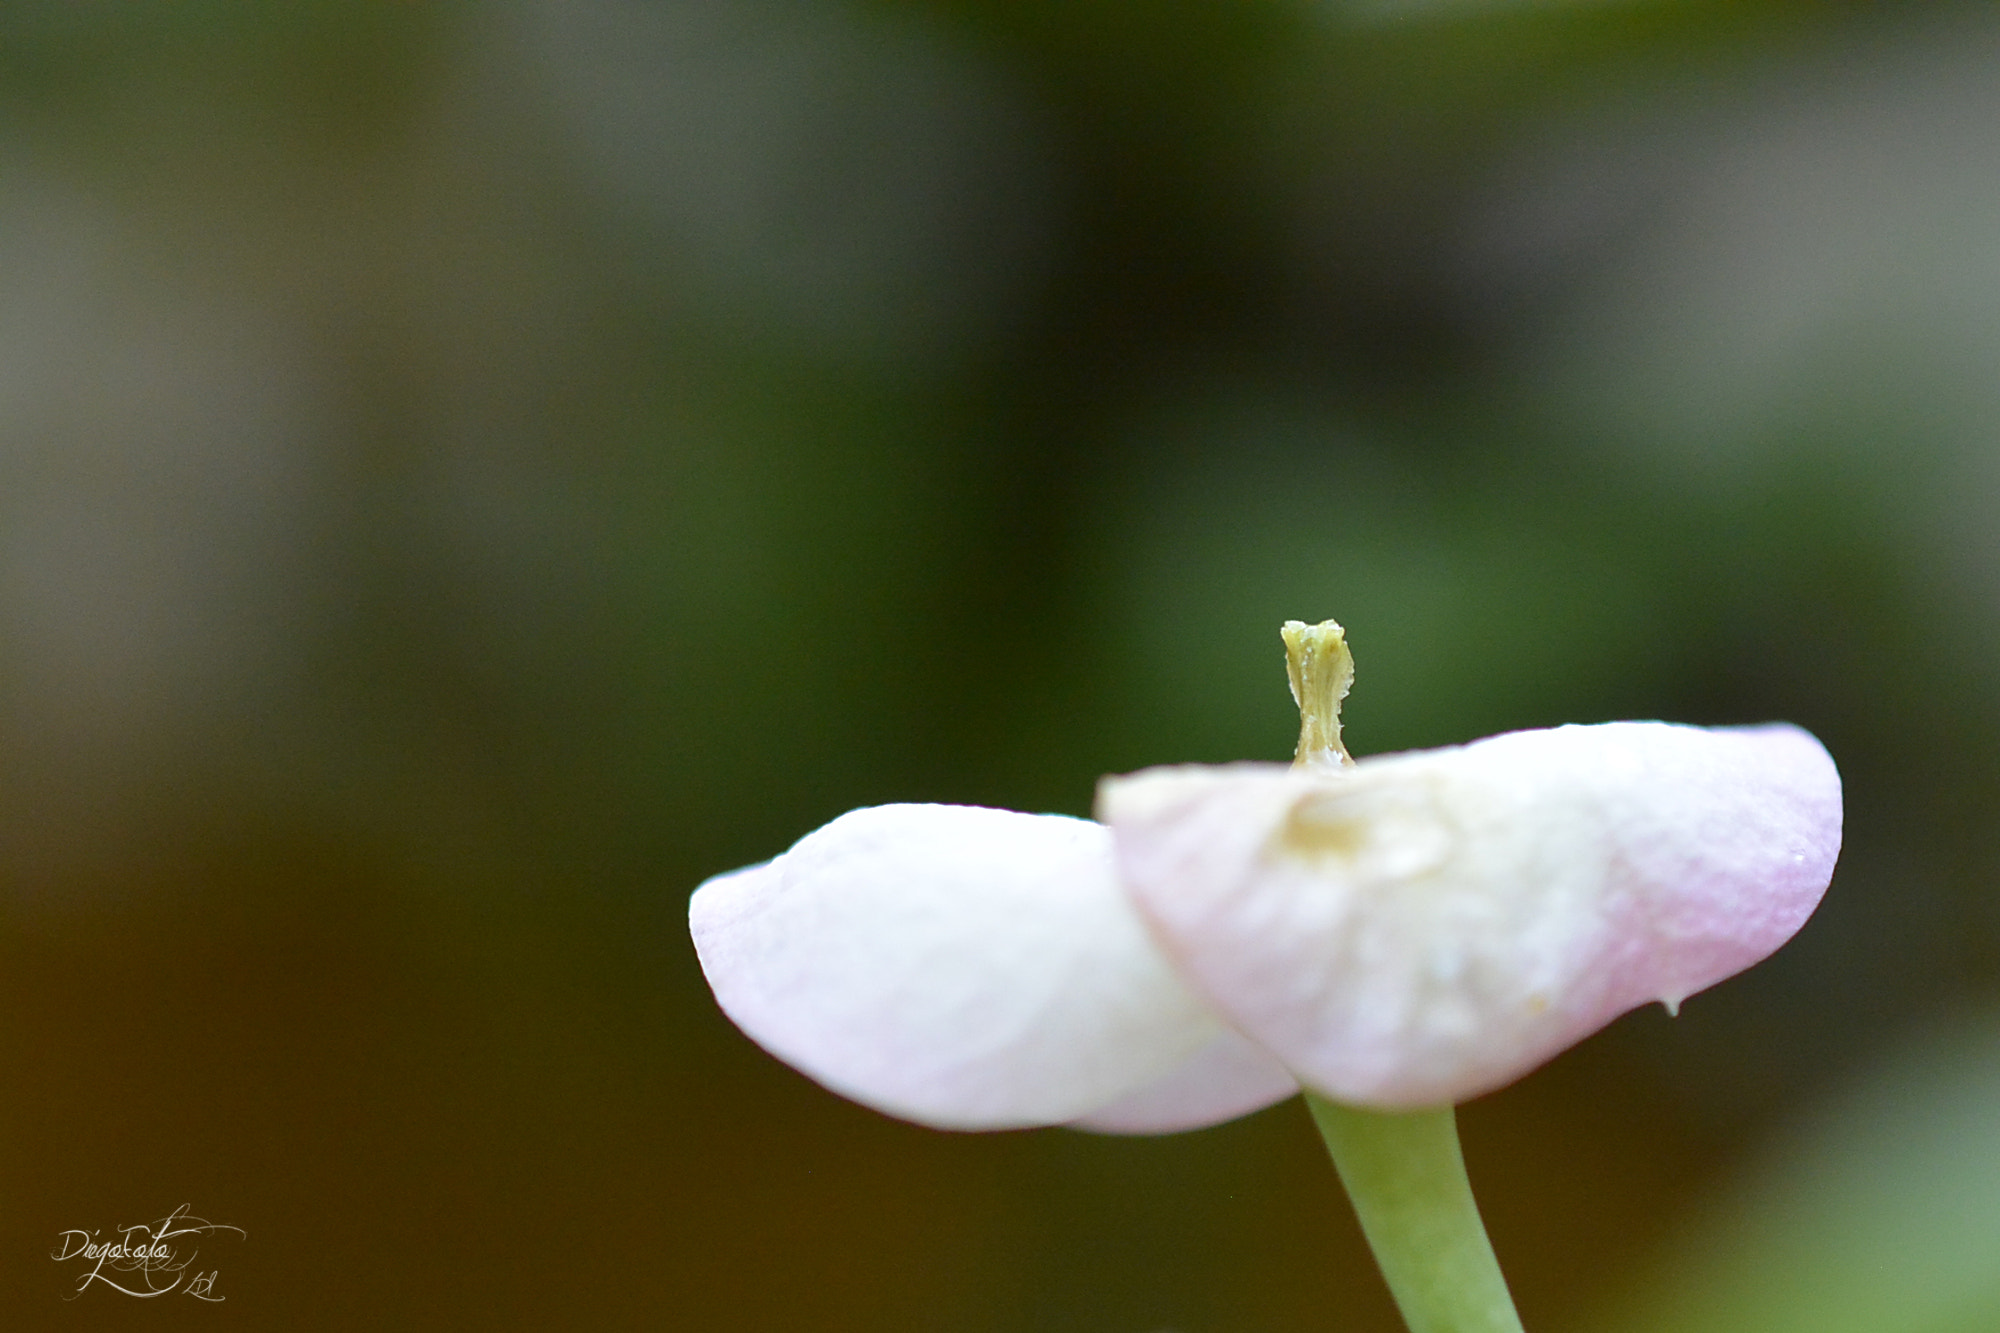 Nikon 1 V2 sample photo. Euphorbia milii o corona de cristo photography